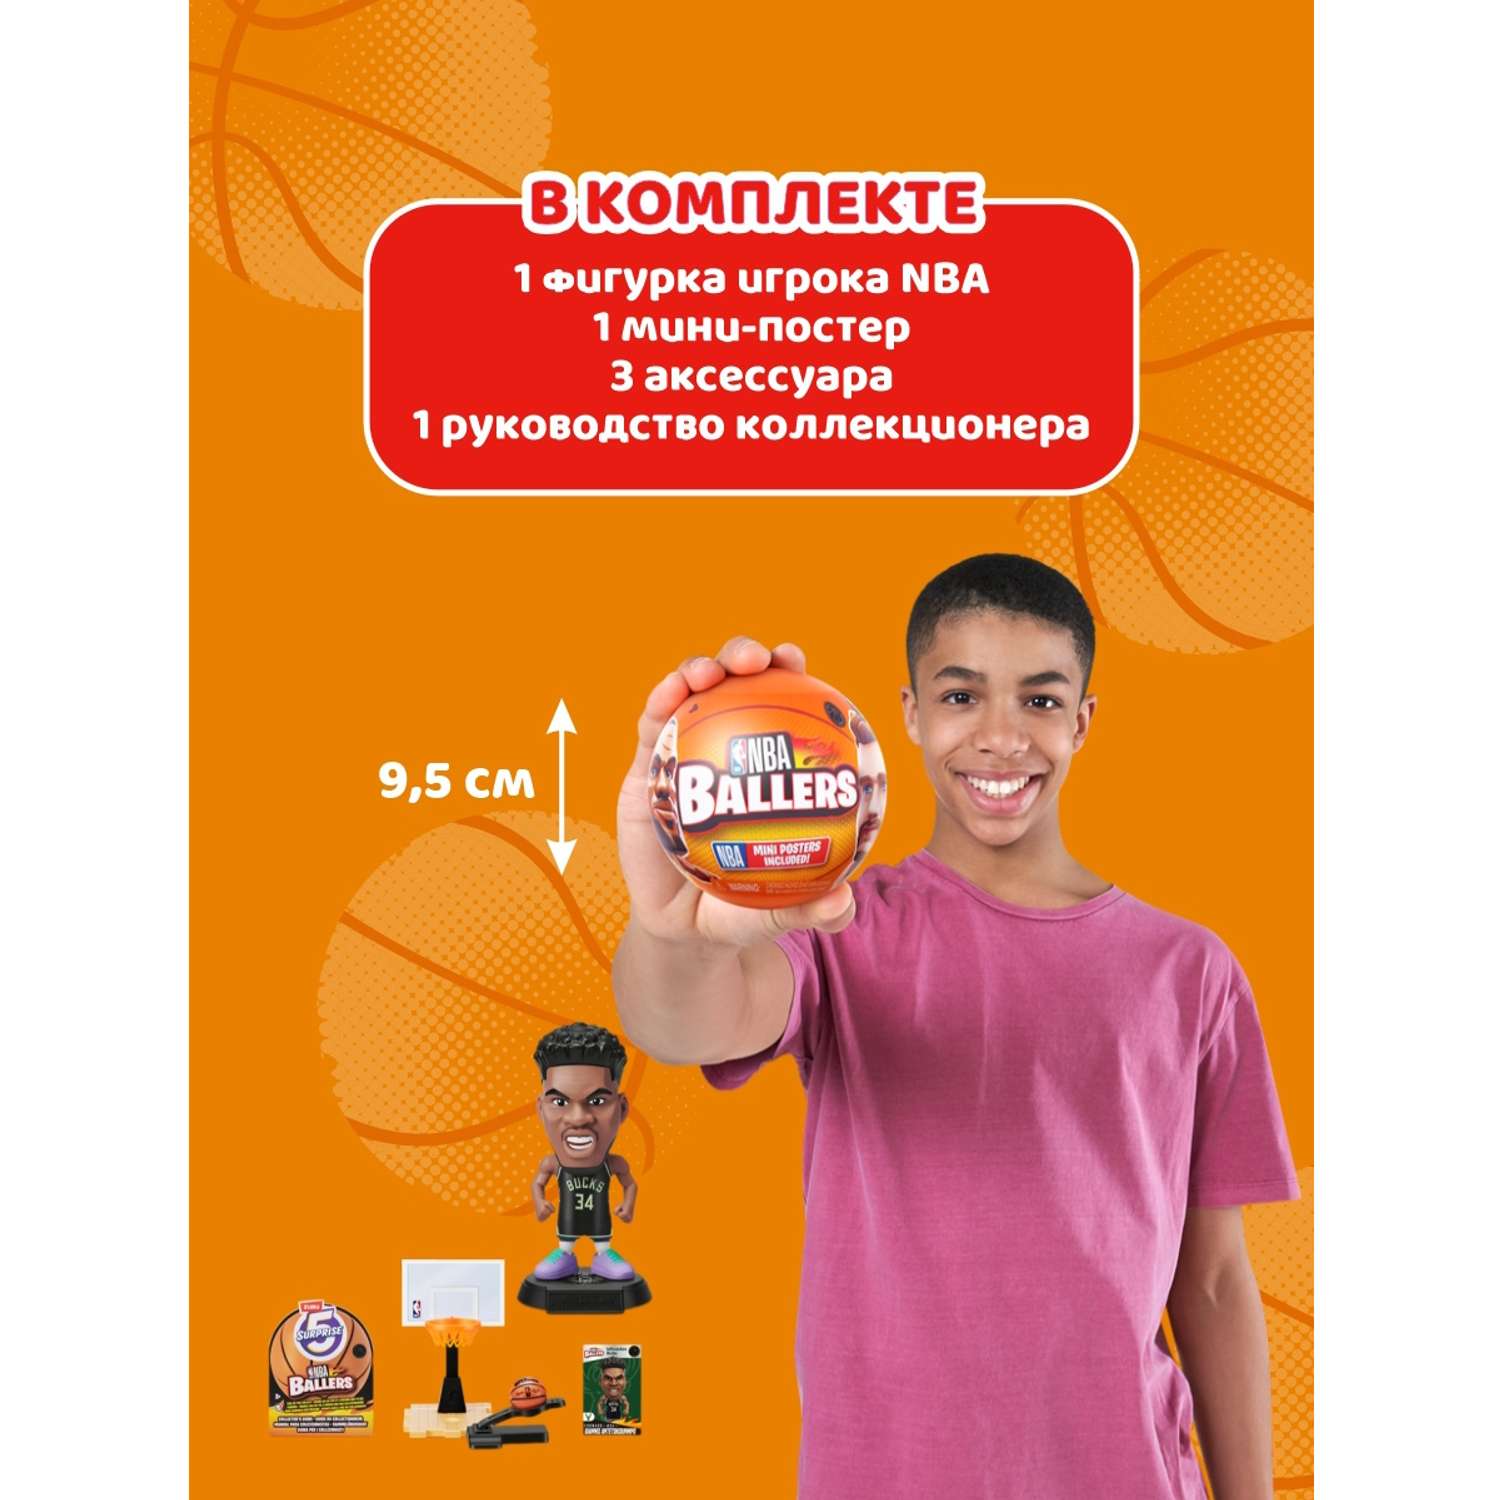 Игрушка Zuru 5 surprise NBA Ballers Шар в непрозрачной упаковке (Сюрприз) 77490GQ4-S002 - фото 2